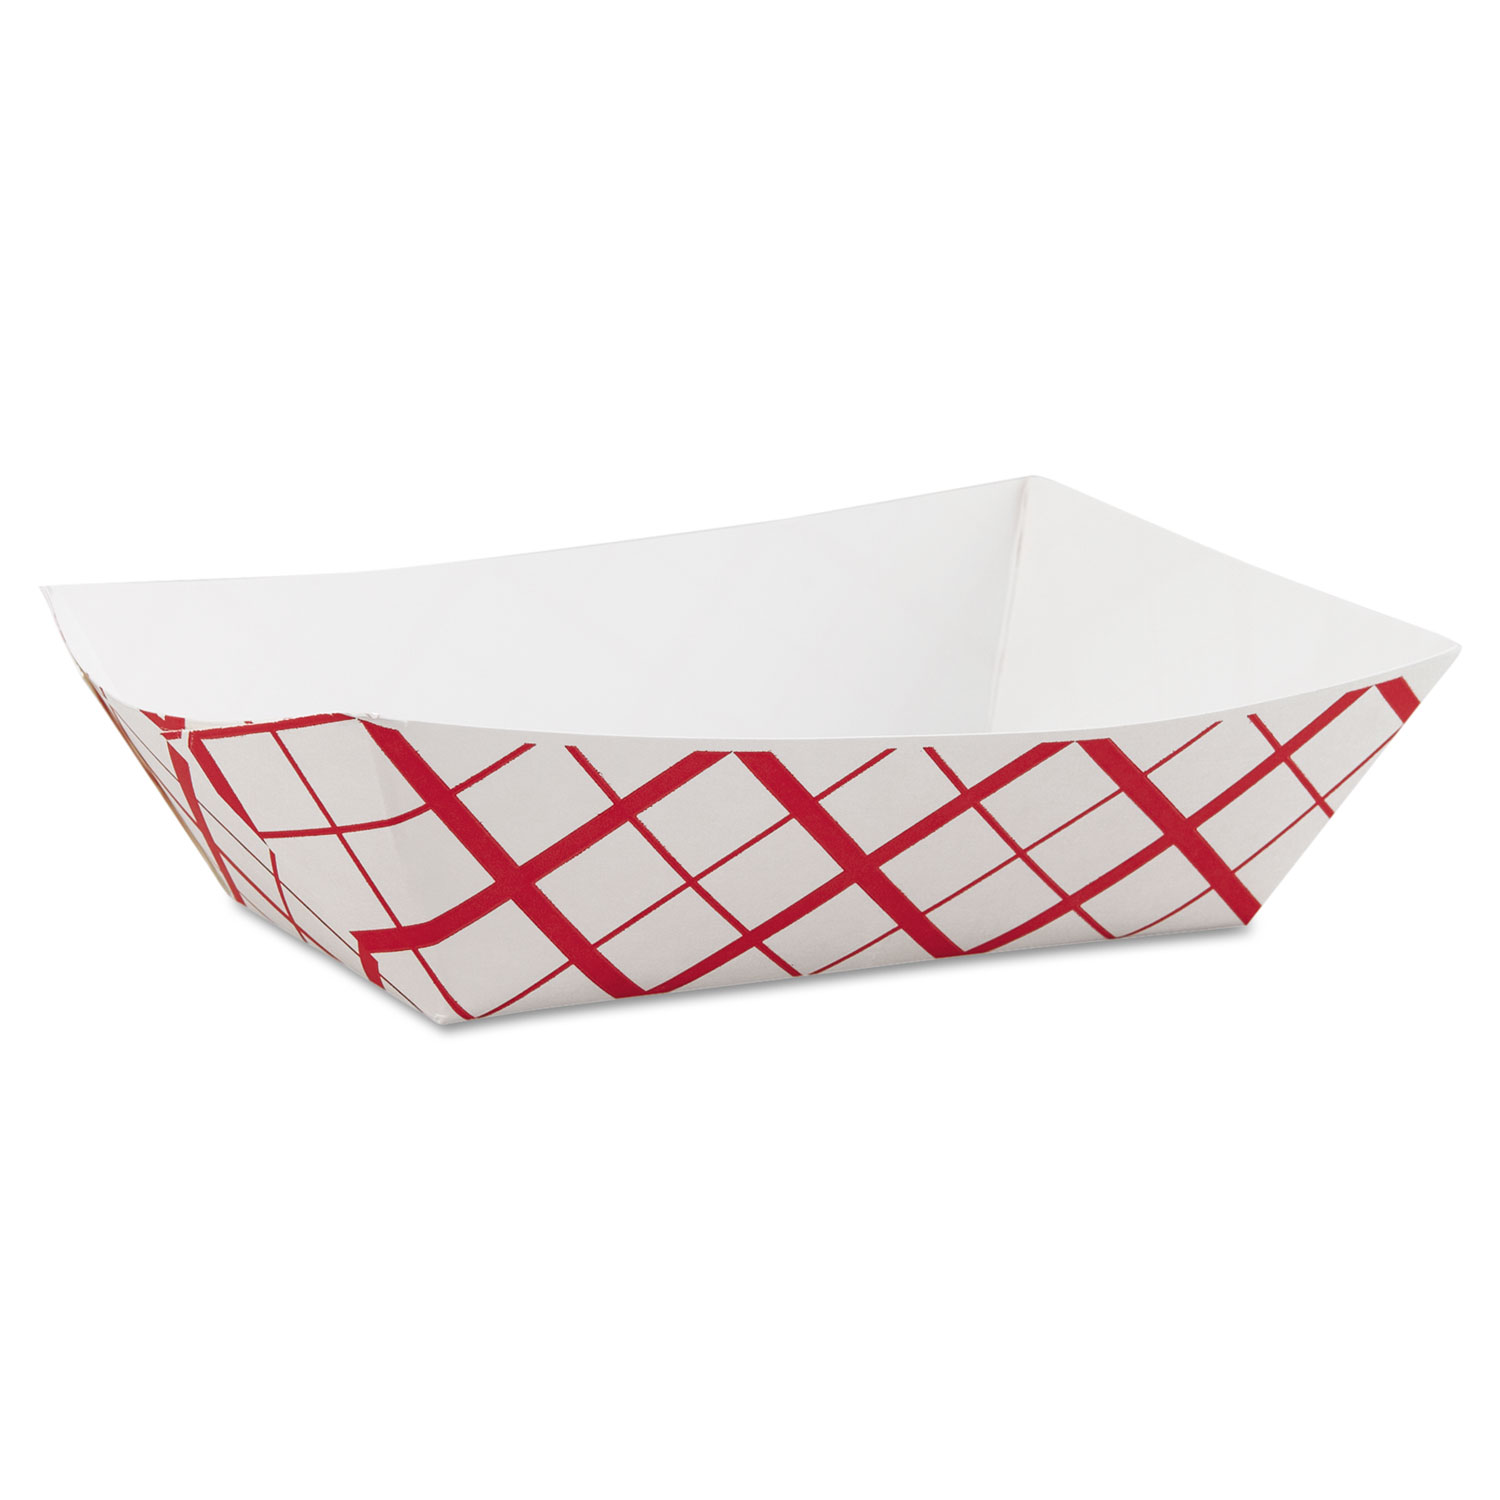  SCT SCH 0425 Paper Food Baskets, 3lb, Red/White, 500/Carton (SCH0425) 